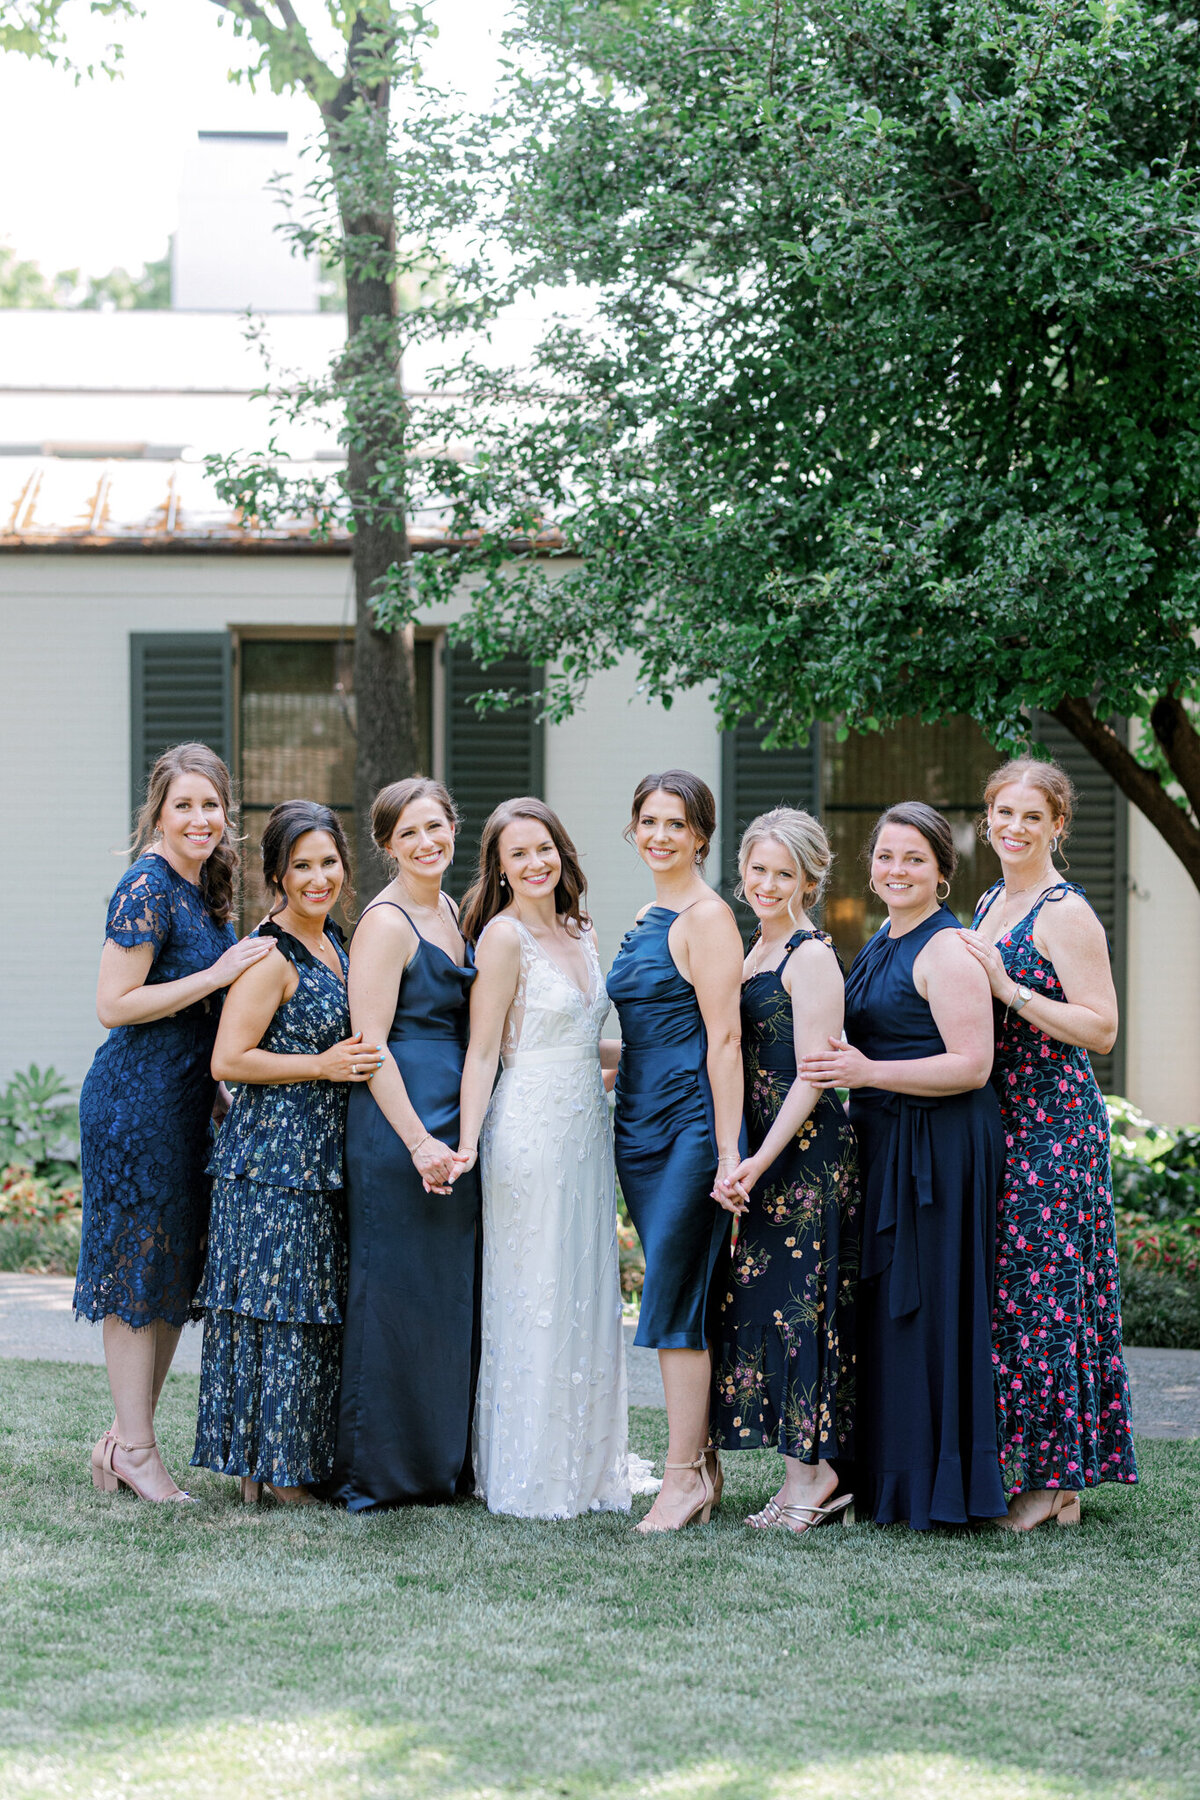 Gena & Matt's Wedding at the Dallas Arboretum | Dallas Wedding Photographer | Sami Kathryn Photography-107